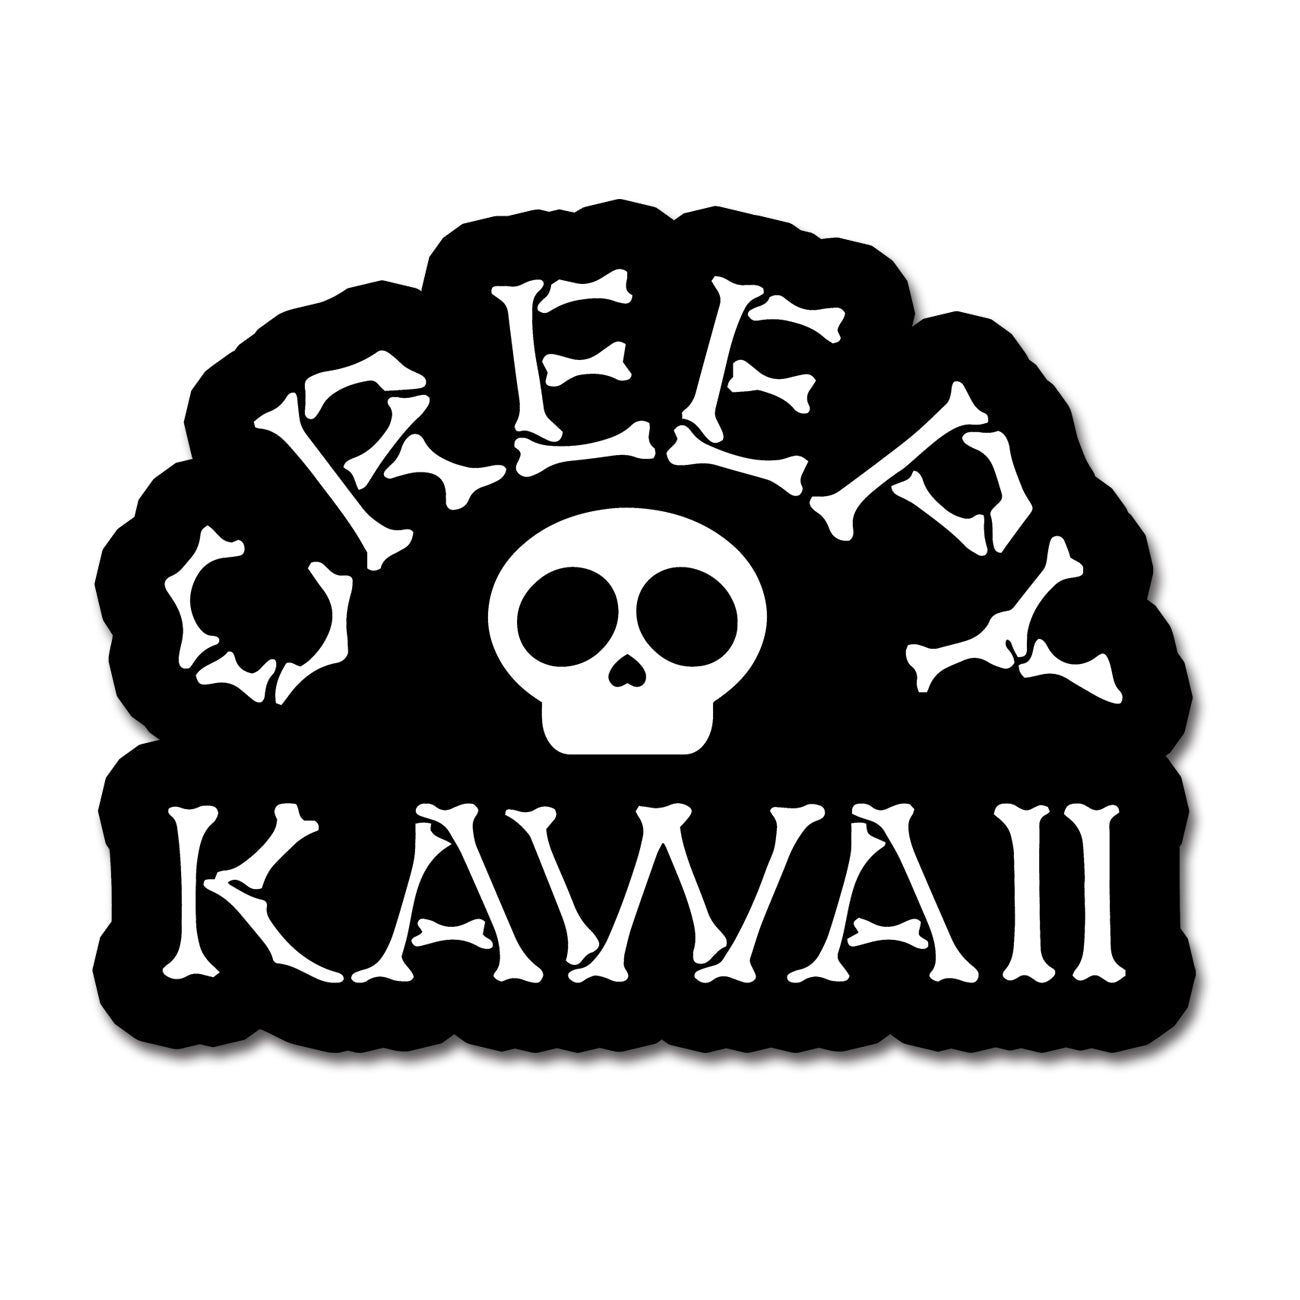 Creepy Kawaii Logo - 3 Inch Weatherproof Vinyl Sticker - Creepy Kawaii